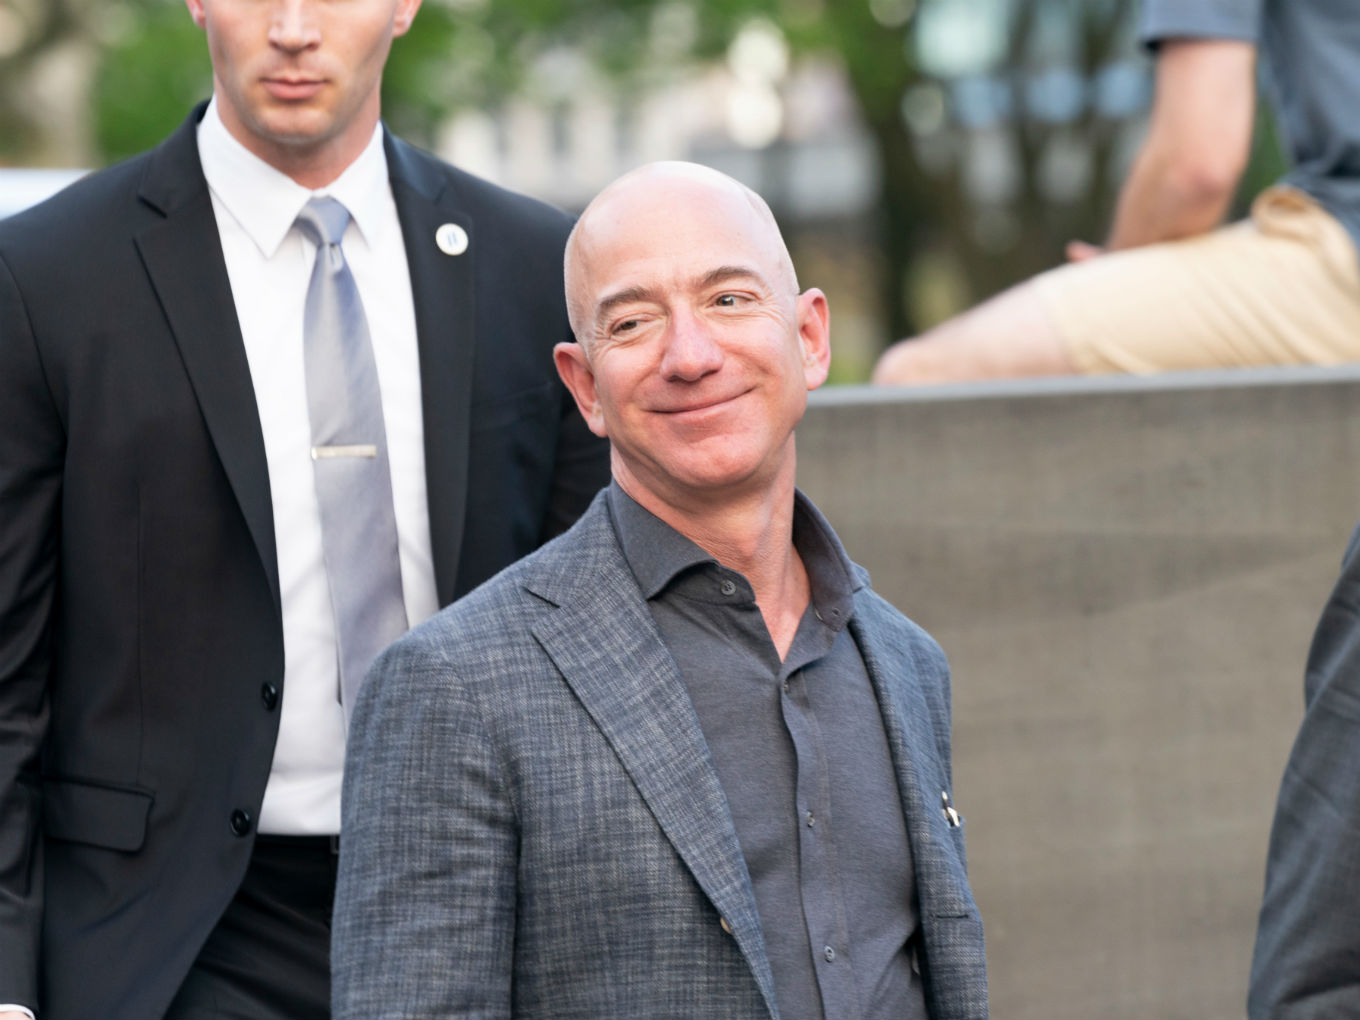 Jeff Bezos Offloads Amazon Shares Worth $2.8 Bn To Fund Blue Origin